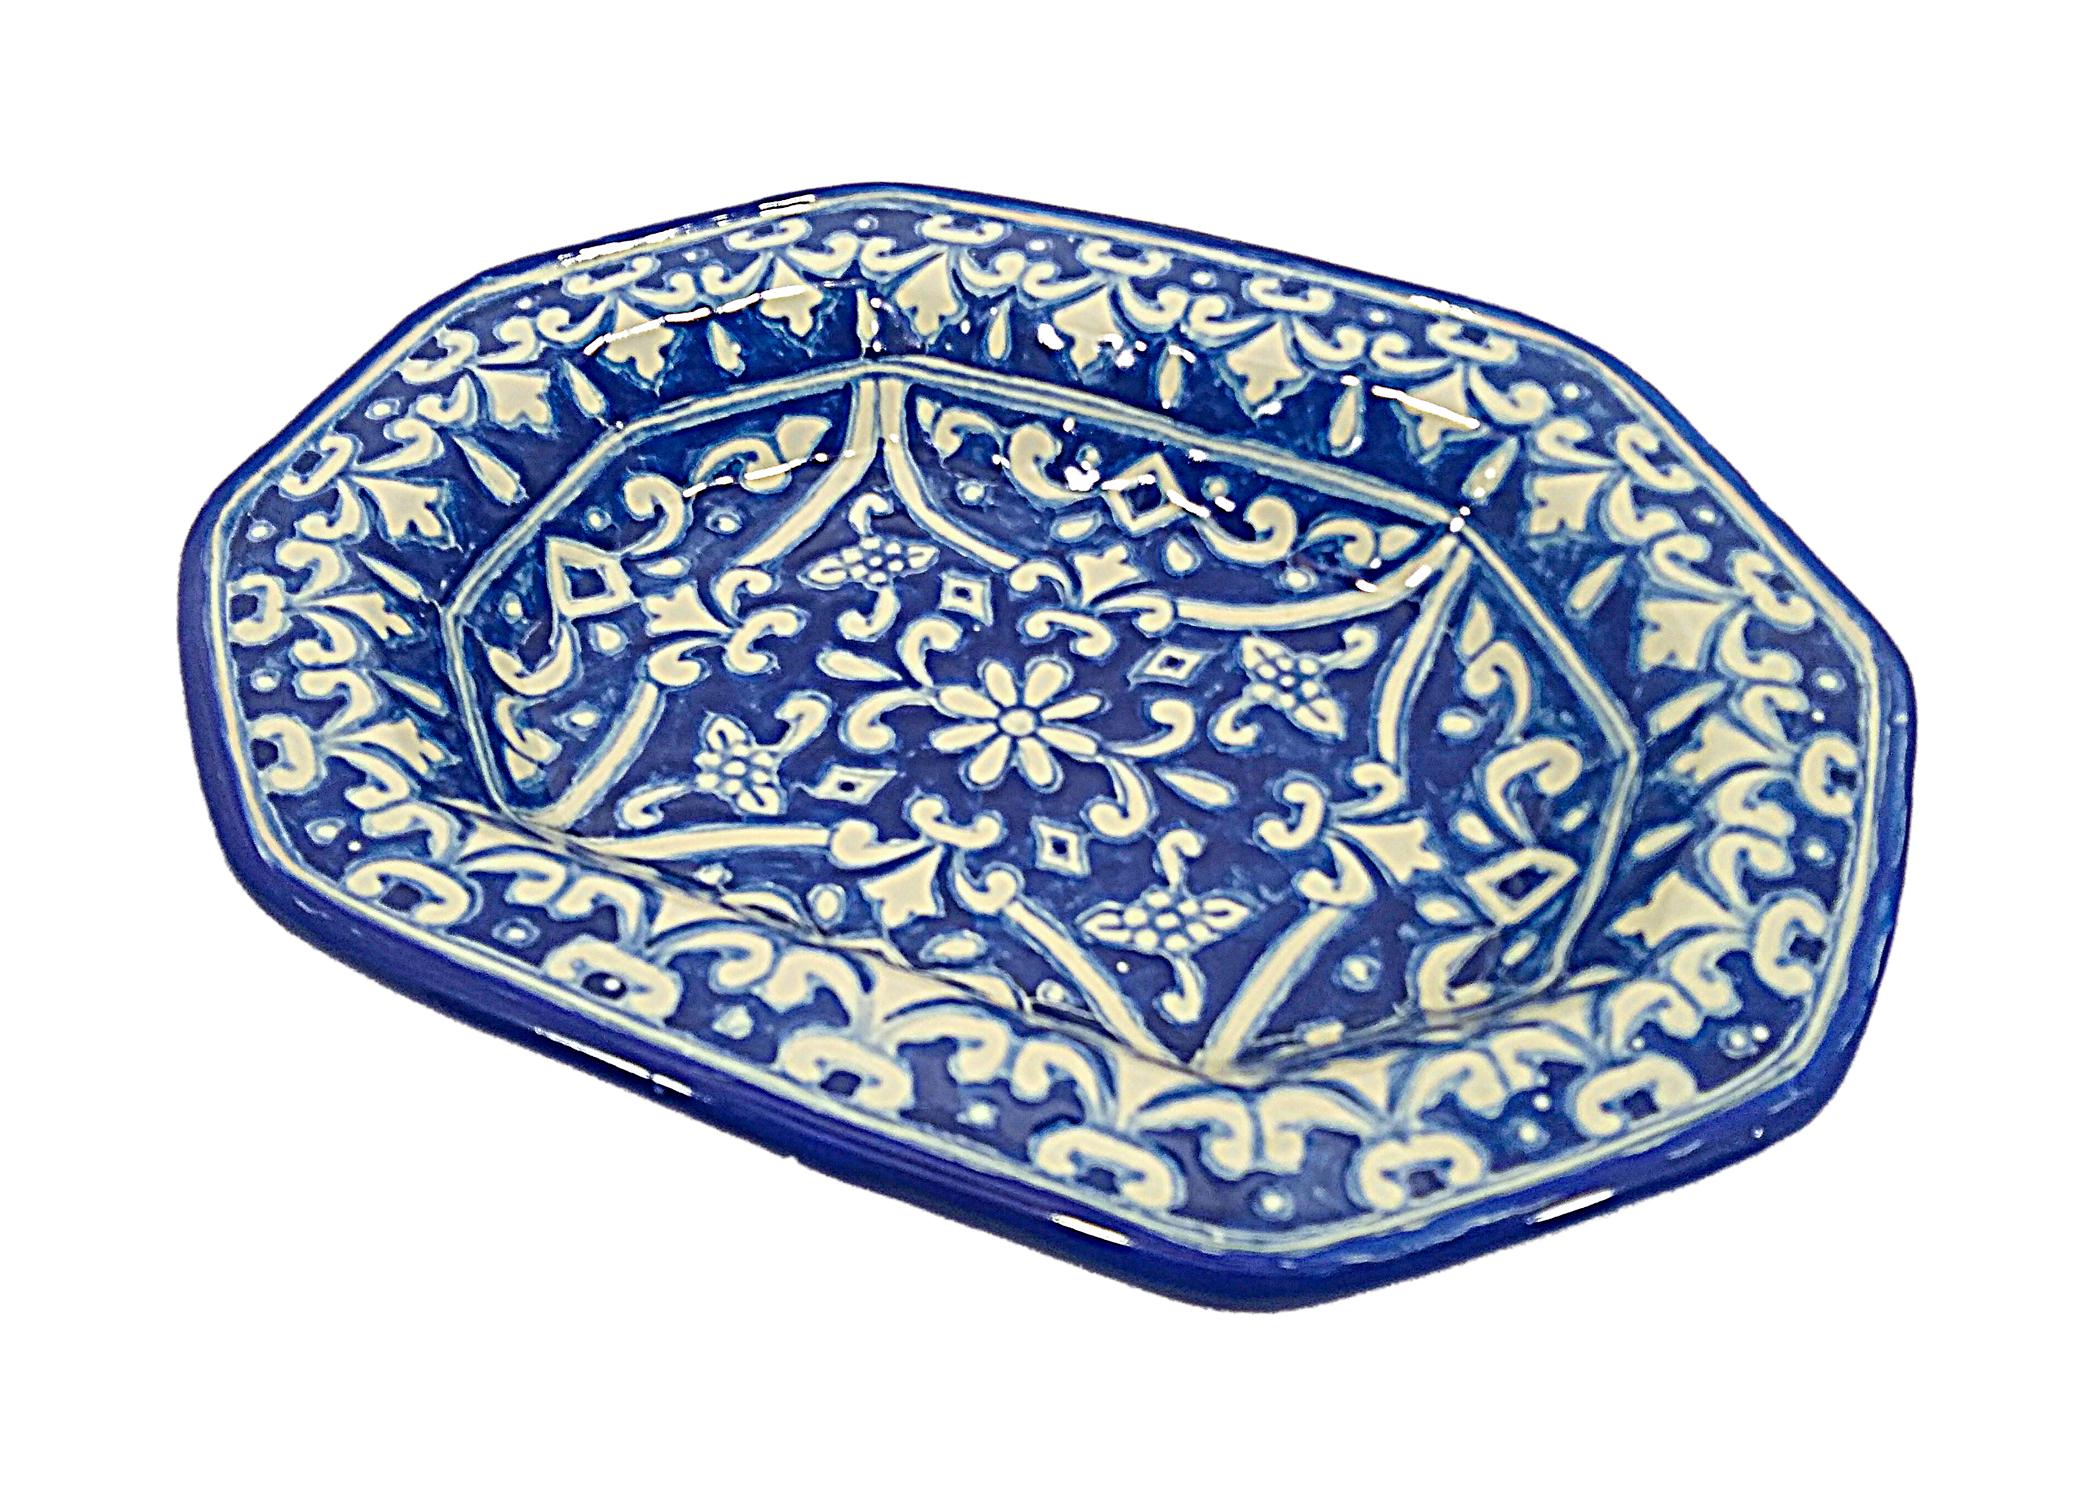 Élégante assiette blanche et bleue réalisée selon la technique Talavera. L'artiste Cesar Torres dresse le portrait de l'art colonial du Mexique. 

La Talavera n'est pas une simple céramique peinte : sa décoration exquise est le produit d'un